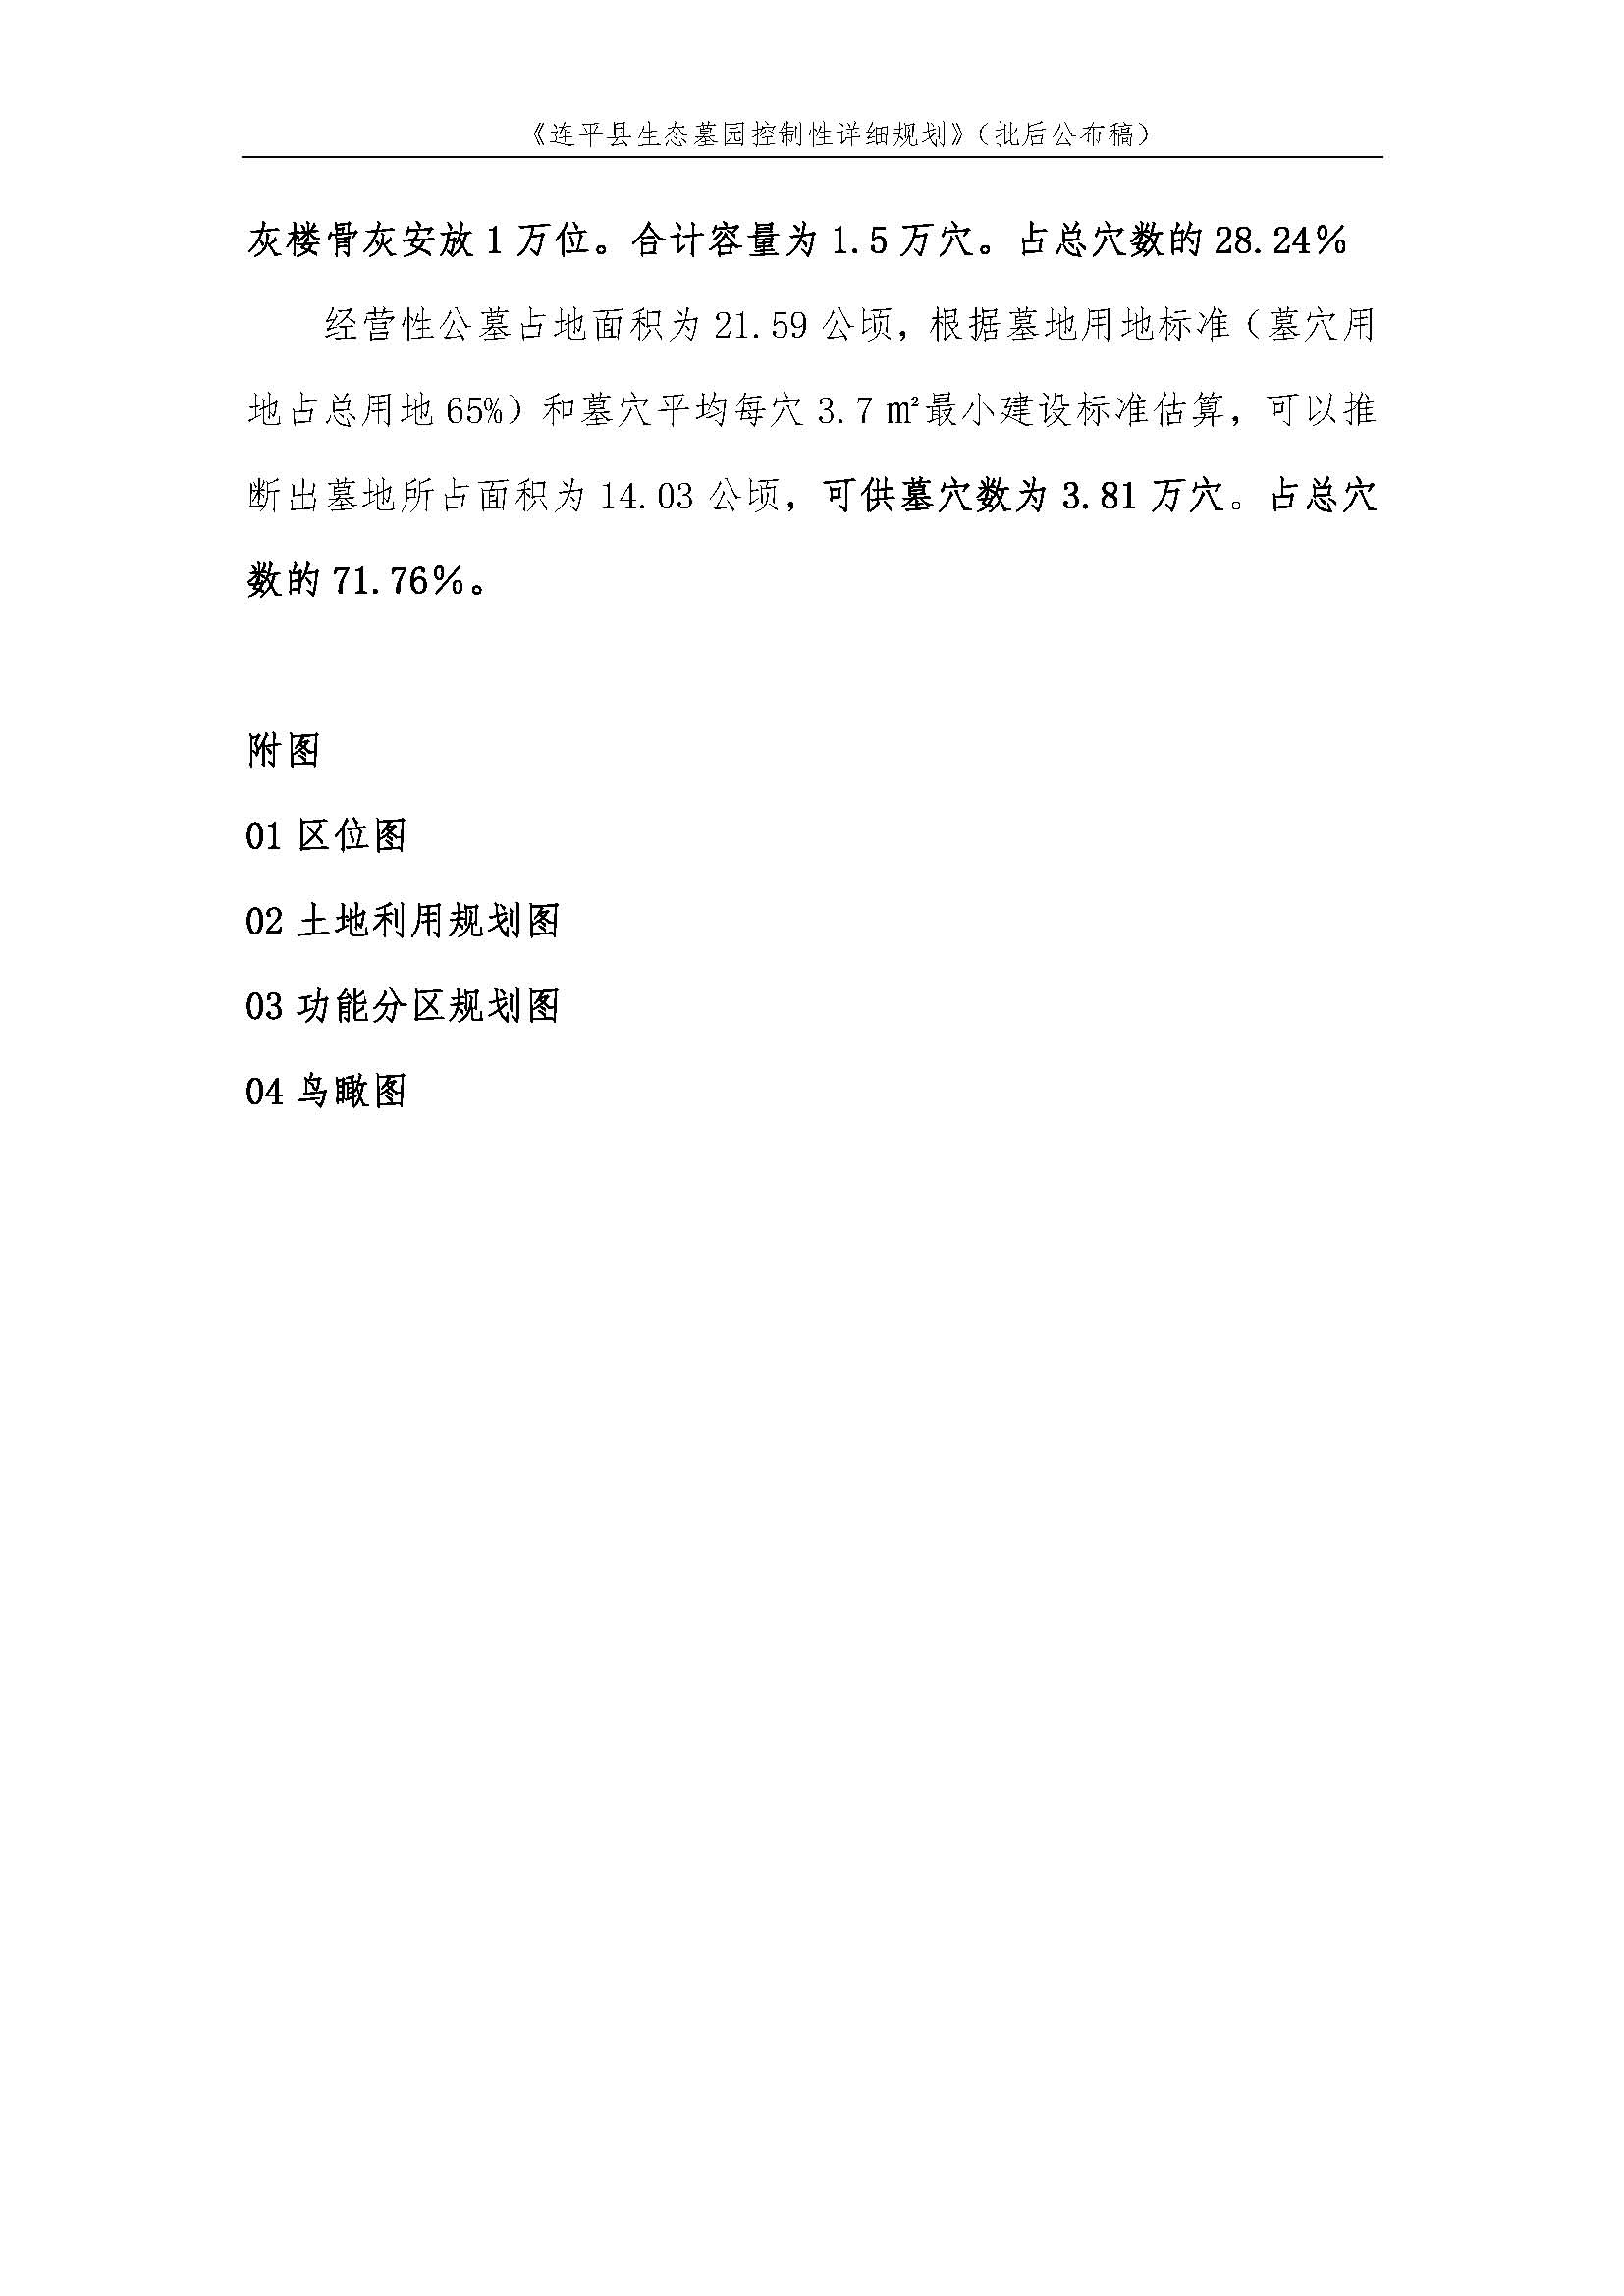 连平县生态墓园控制性详细规划批后公布稿_页面_5.jpg